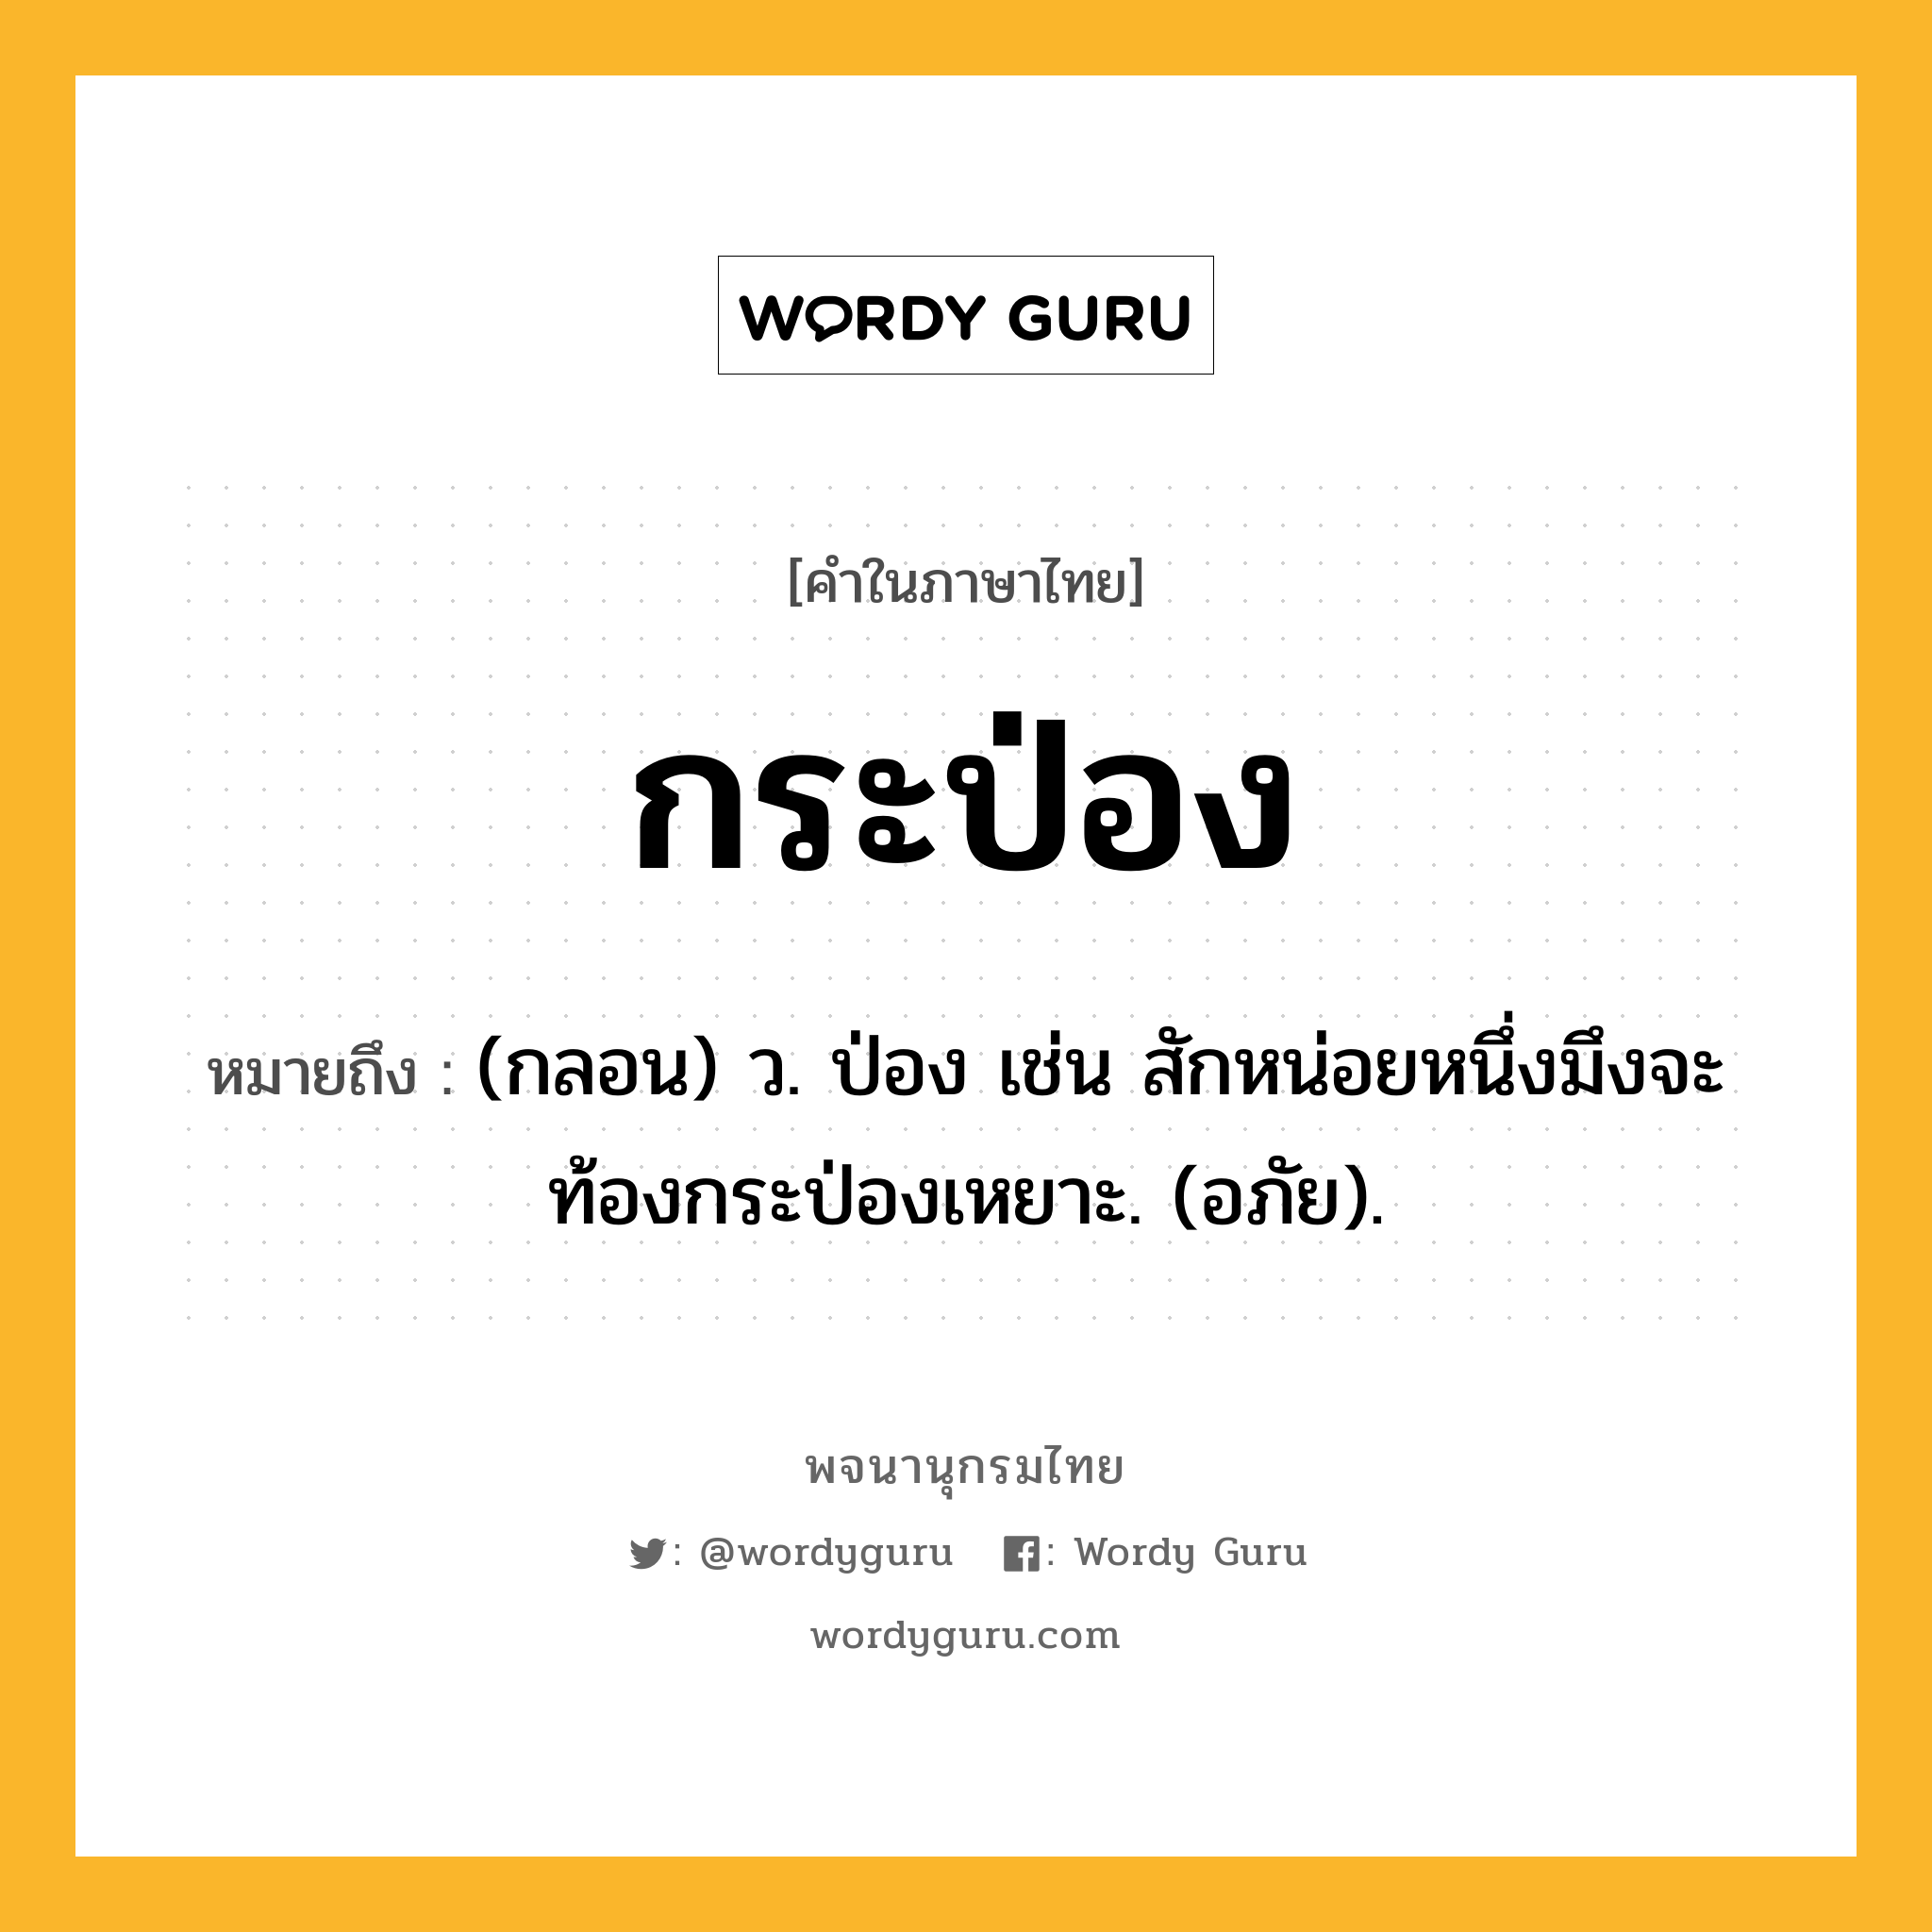 กระป่อง ความหมาย หมายถึงอะไร?, คำในภาษาไทย กระป่อง หมายถึง (กลอน) ว. ป่อง เช่น สักหน่อยหนึ่งมึงจะท้องกระป่องเหยาะ. (อภัย).